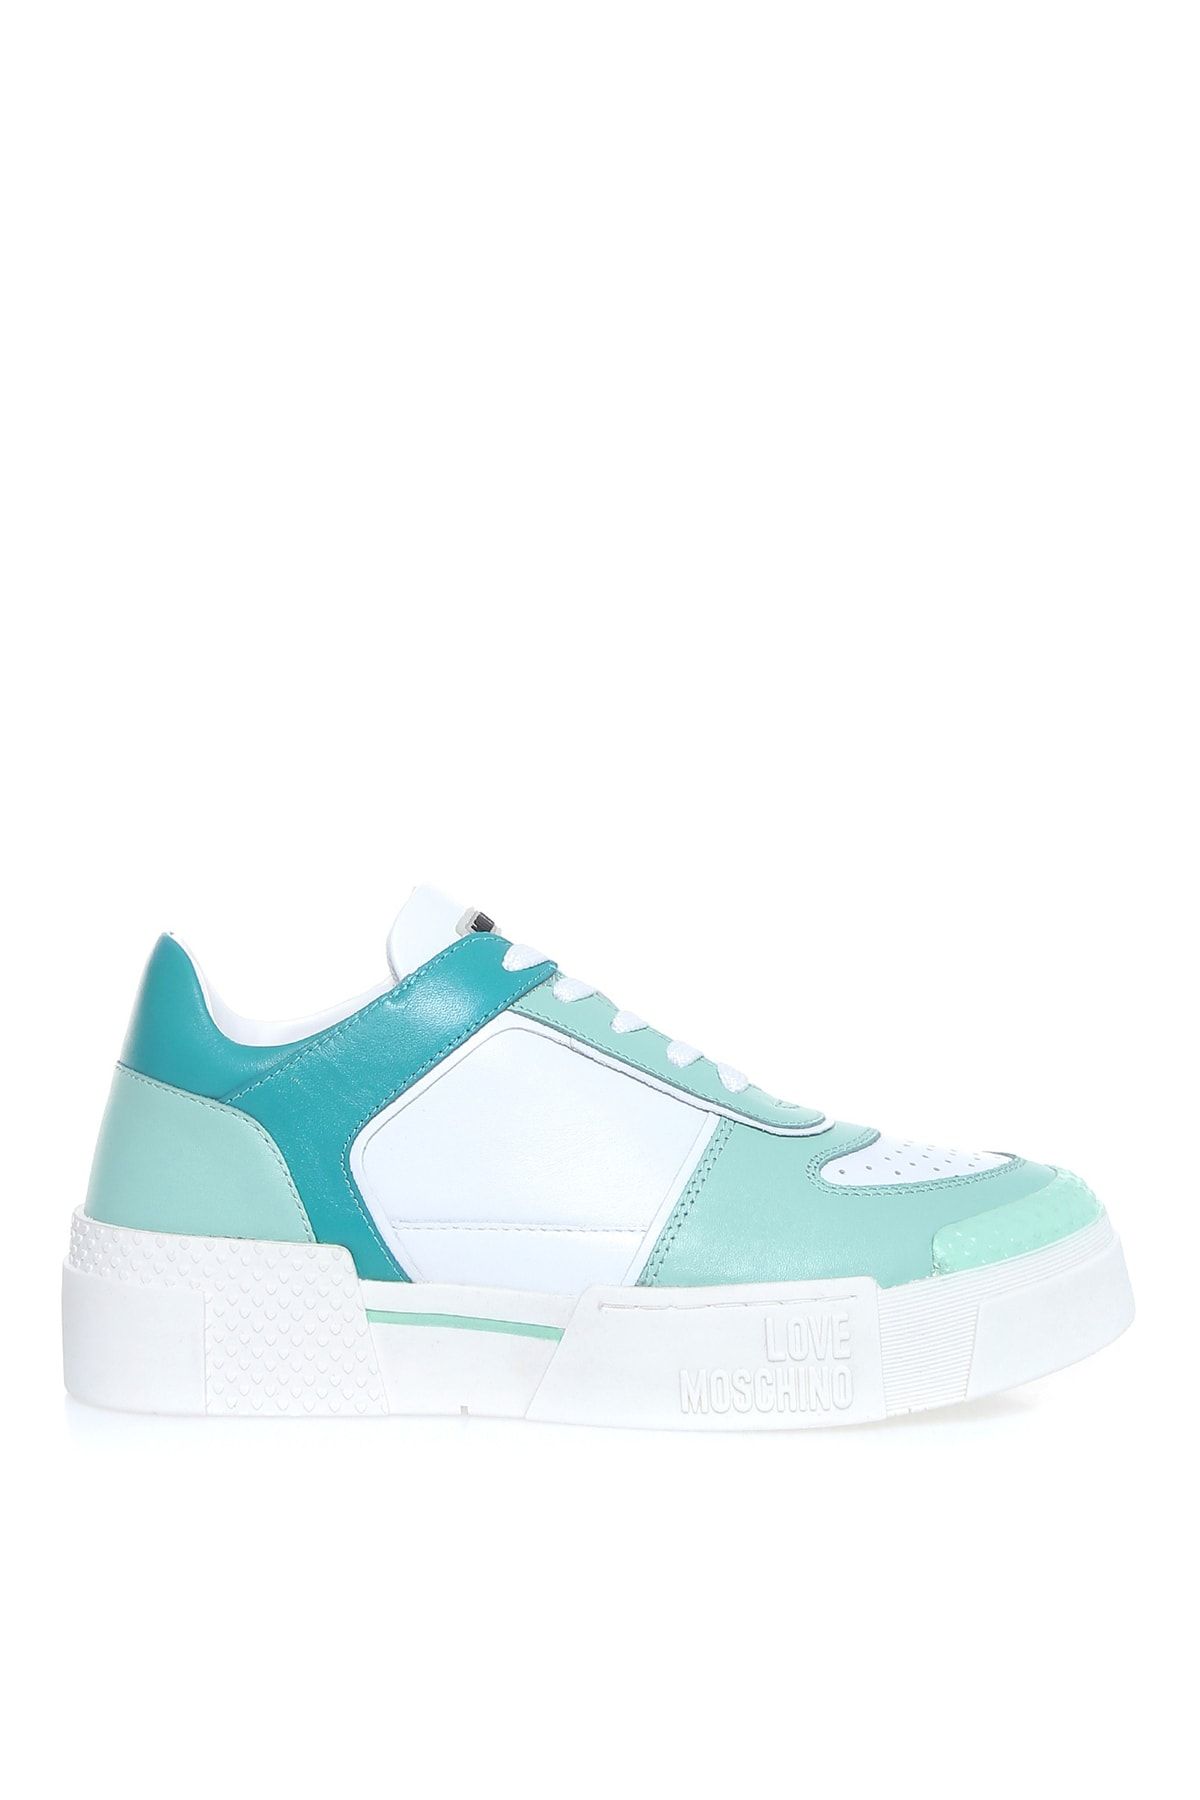 Moschino Beyaz - Yeşil Kadın Sneaker Ja15655g0e